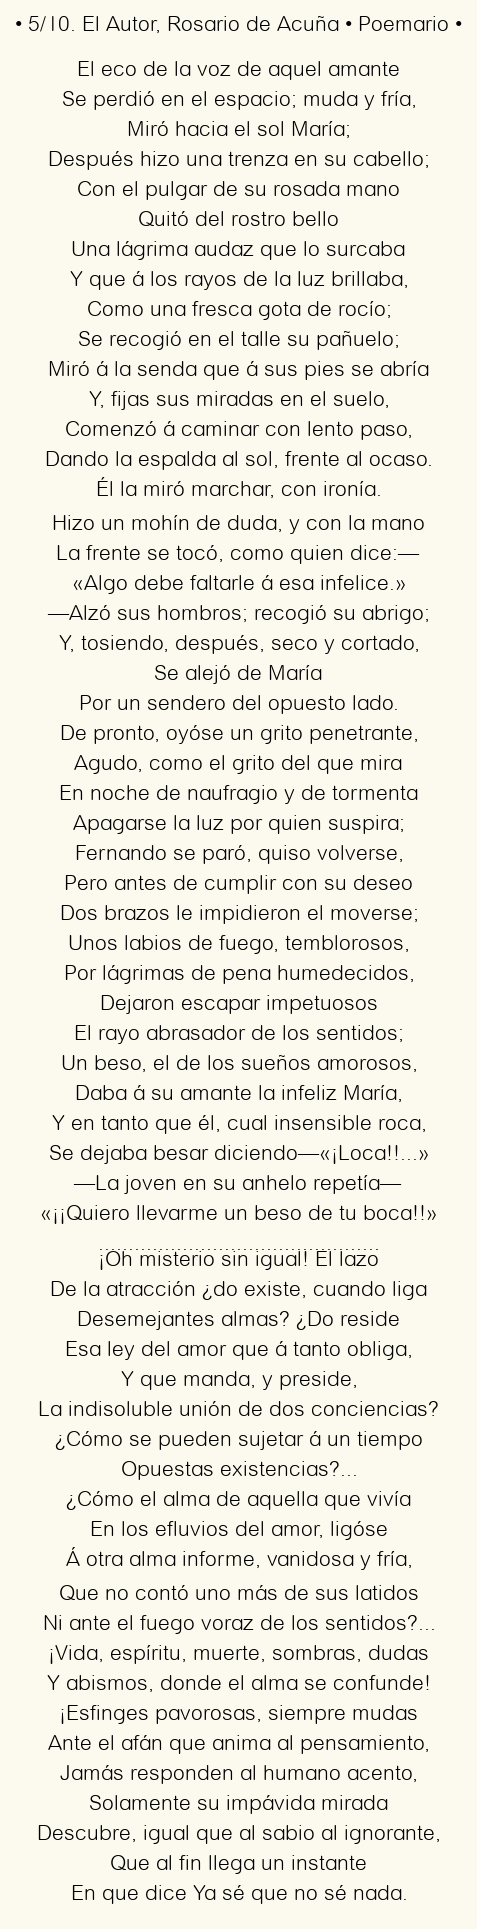 Imagen con el poema 5/10. El Autor, por Rosario de Acuña